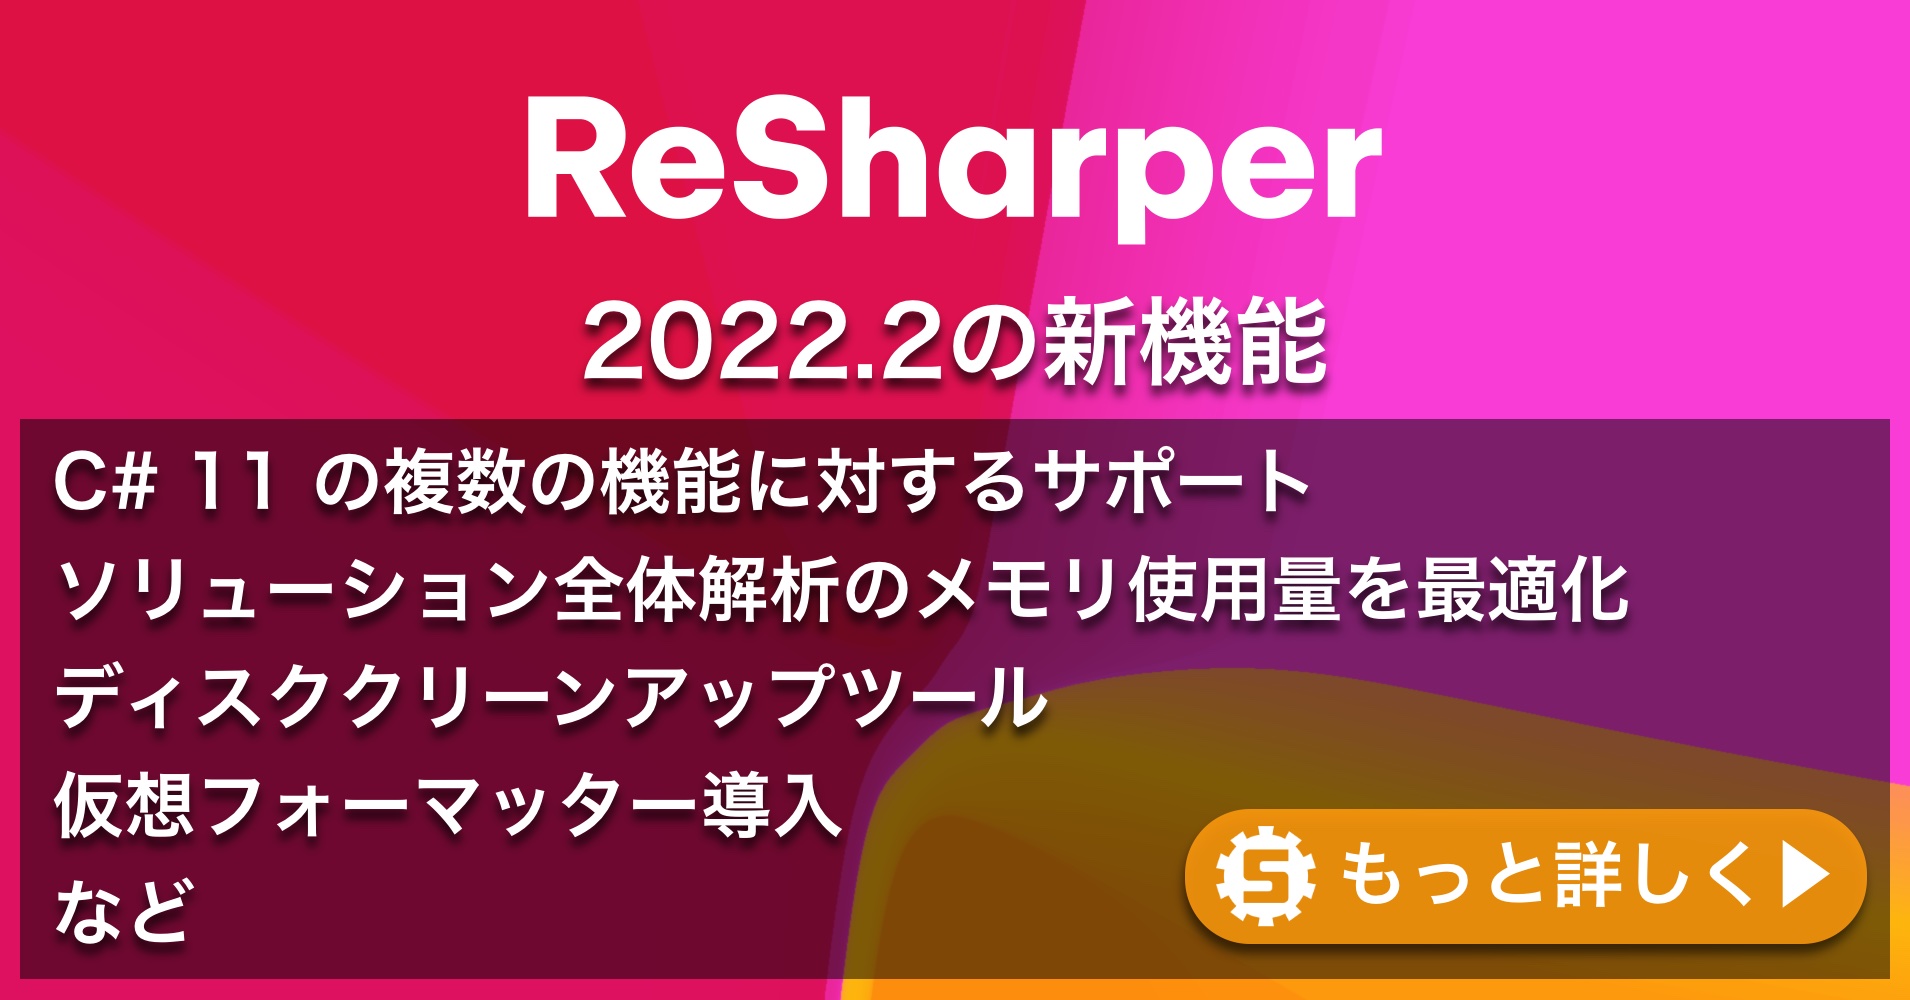 ReSharper 2022.2の新機能